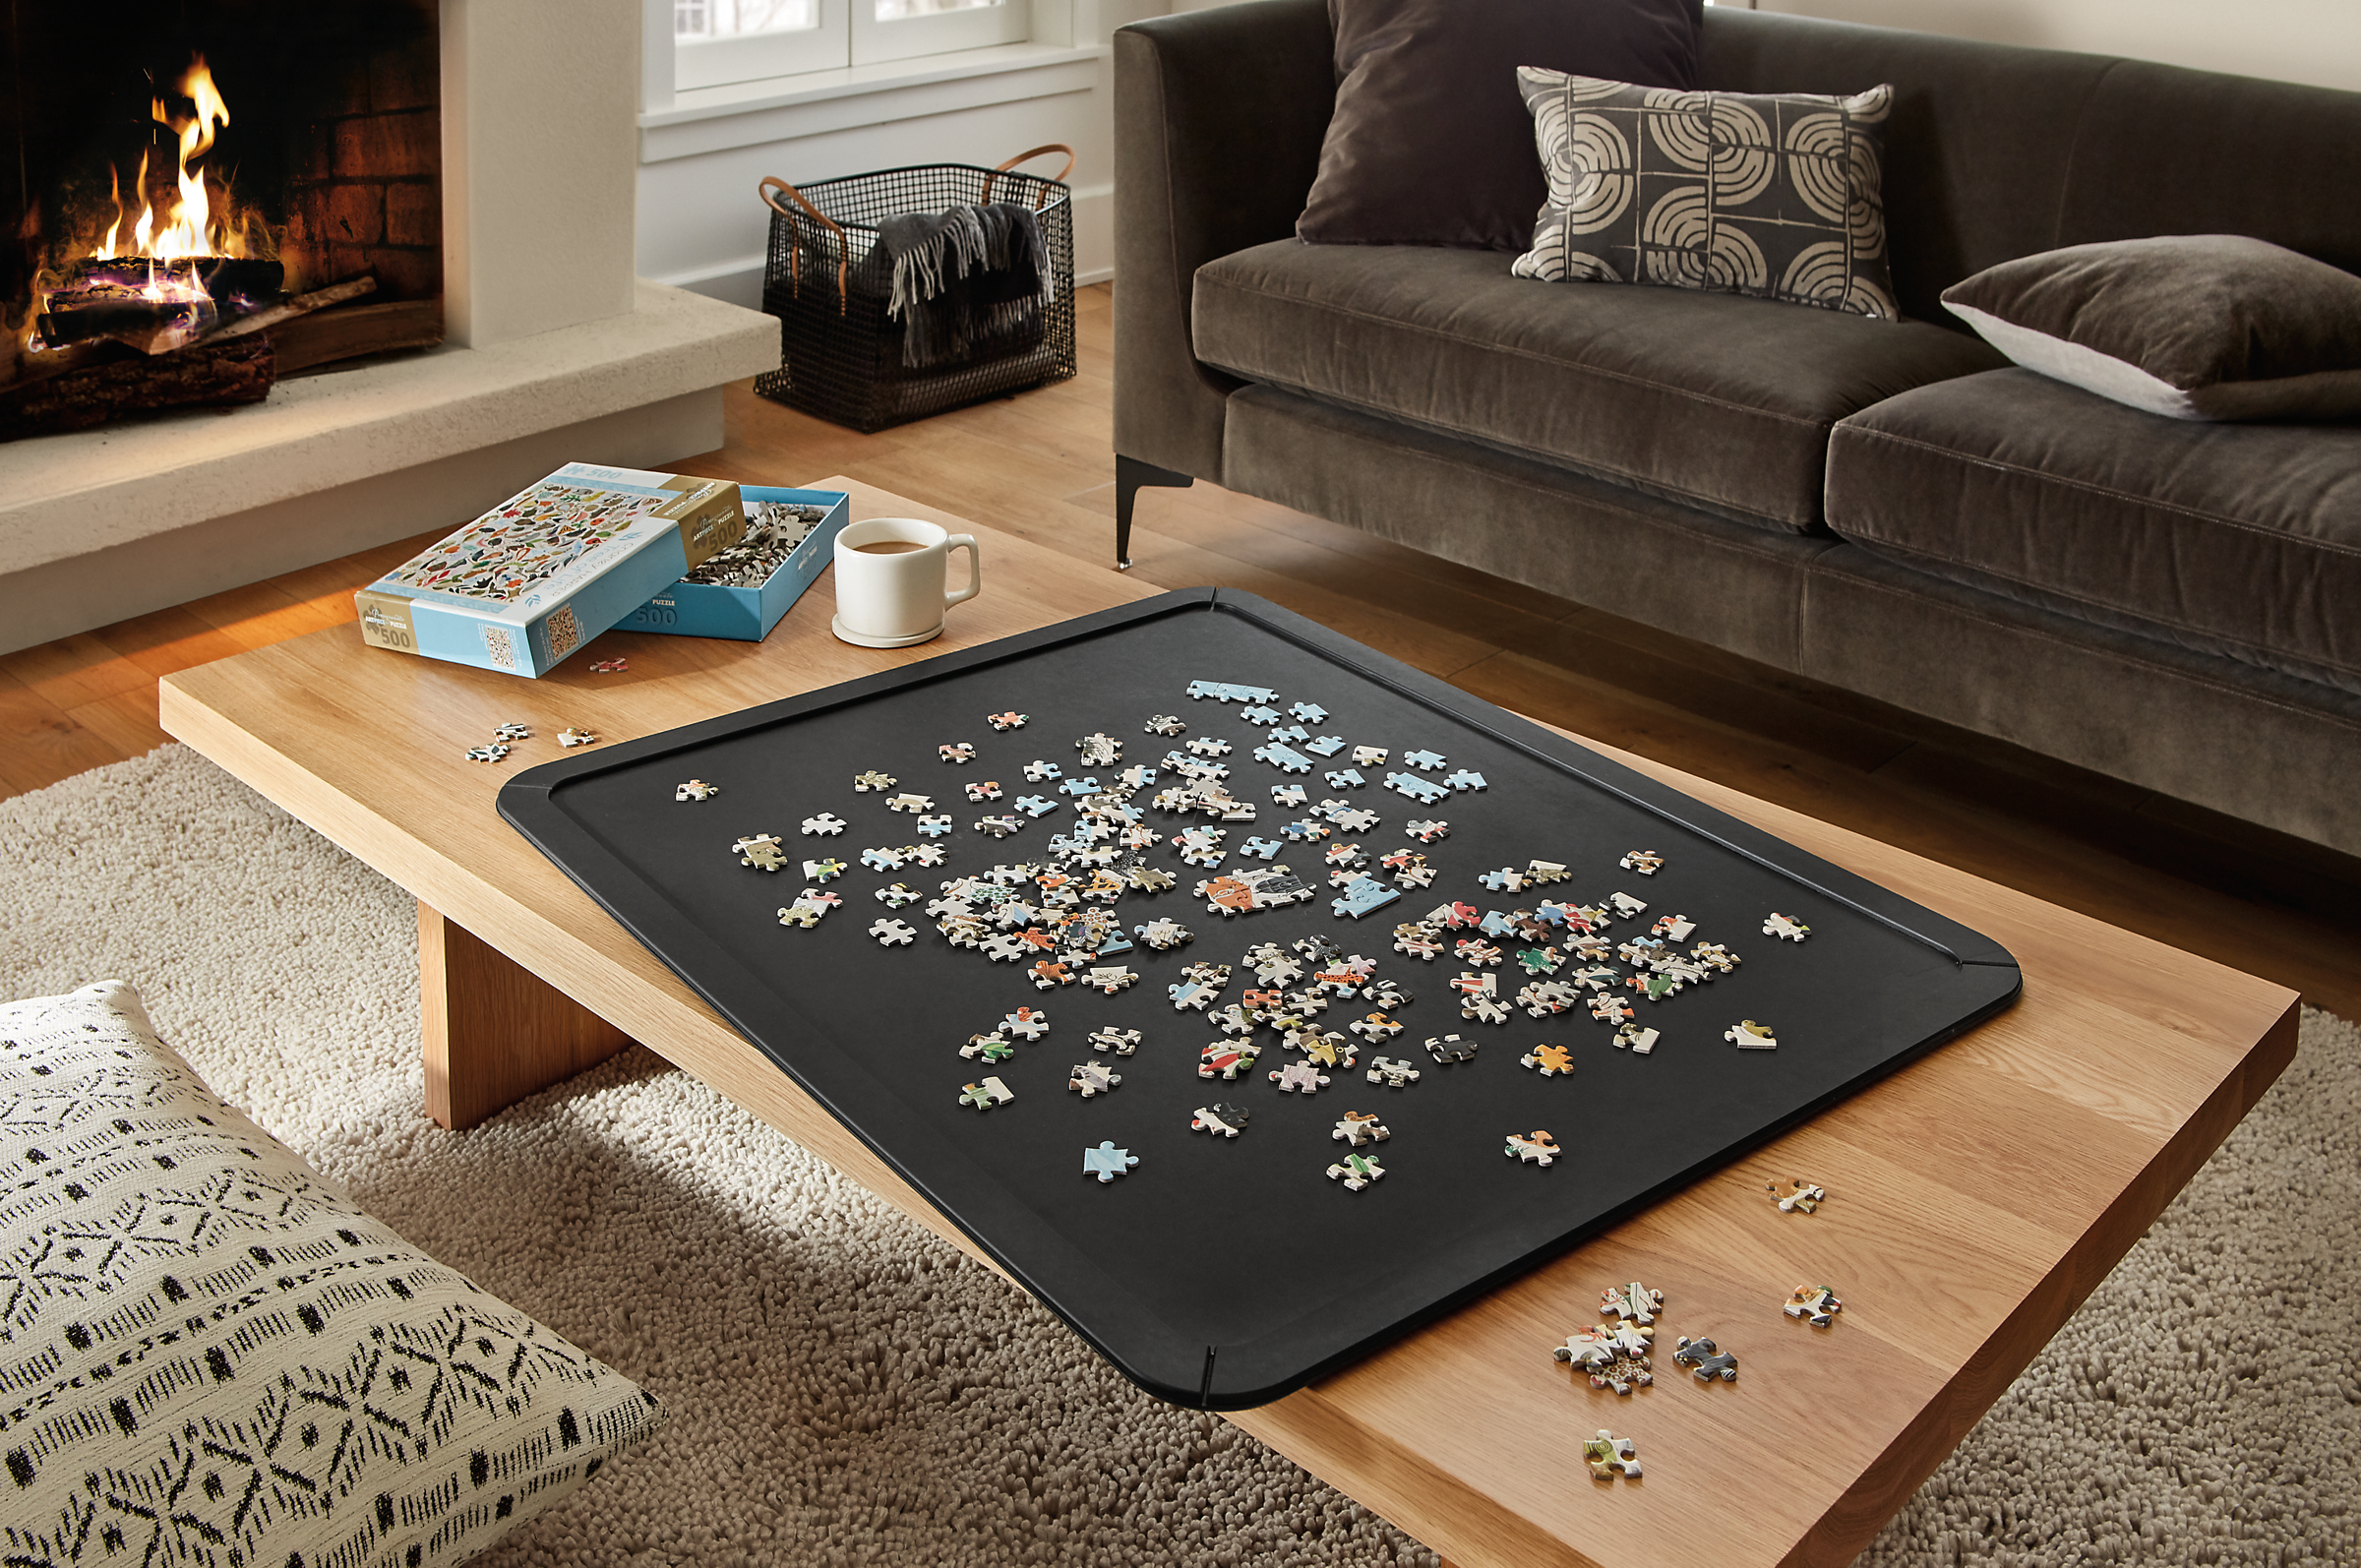 Puzzle Boards - Modern Home Decor - Room & Board